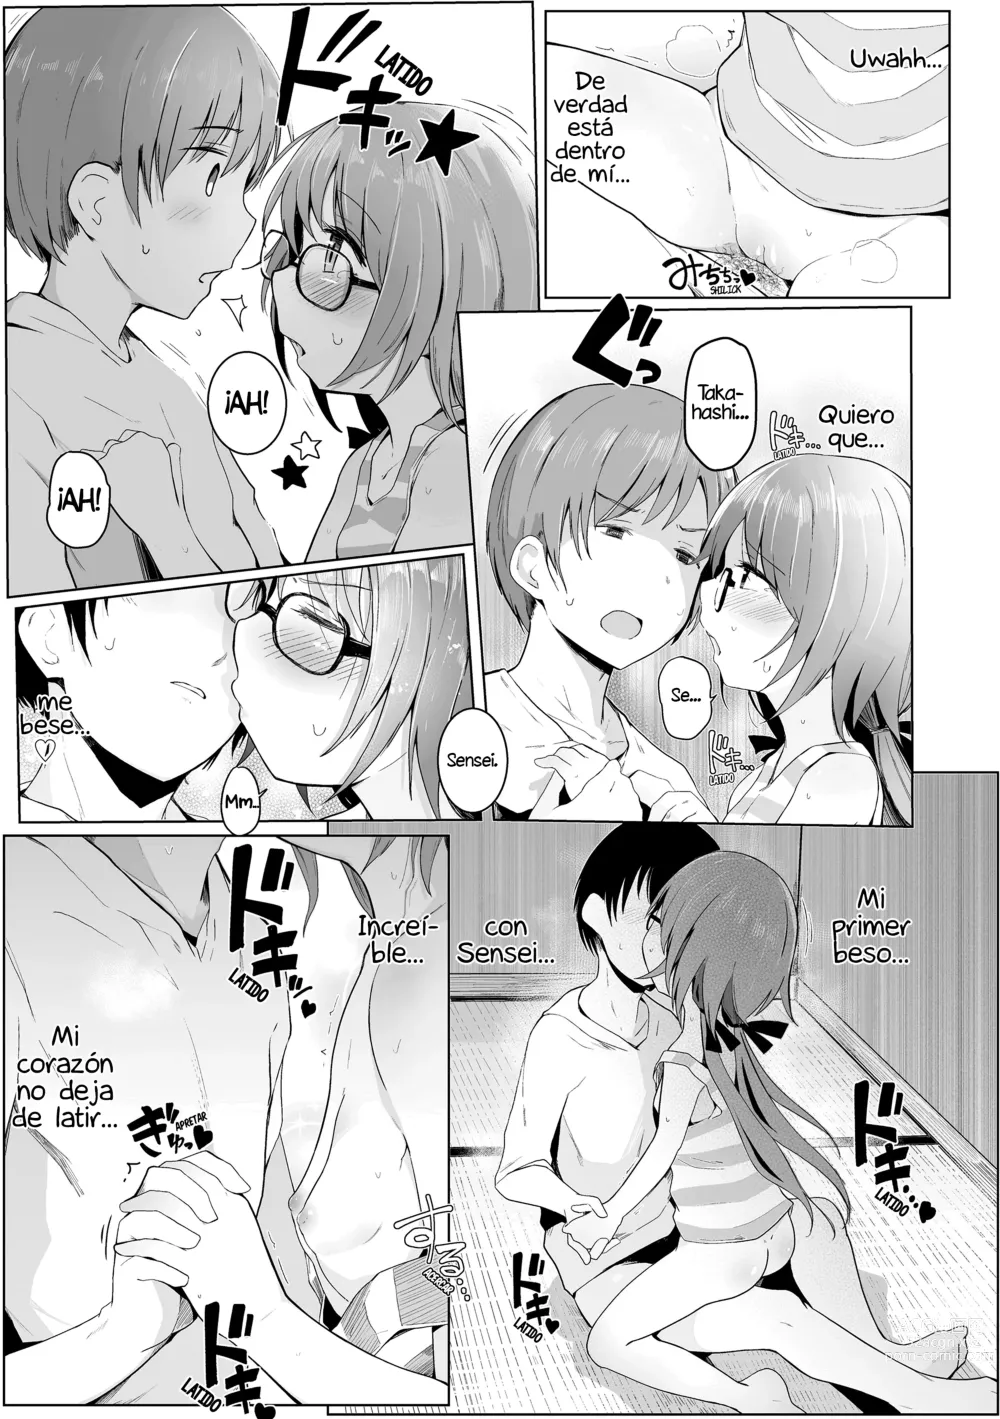 Page 15 of manga ¡Por favor, Sensei!